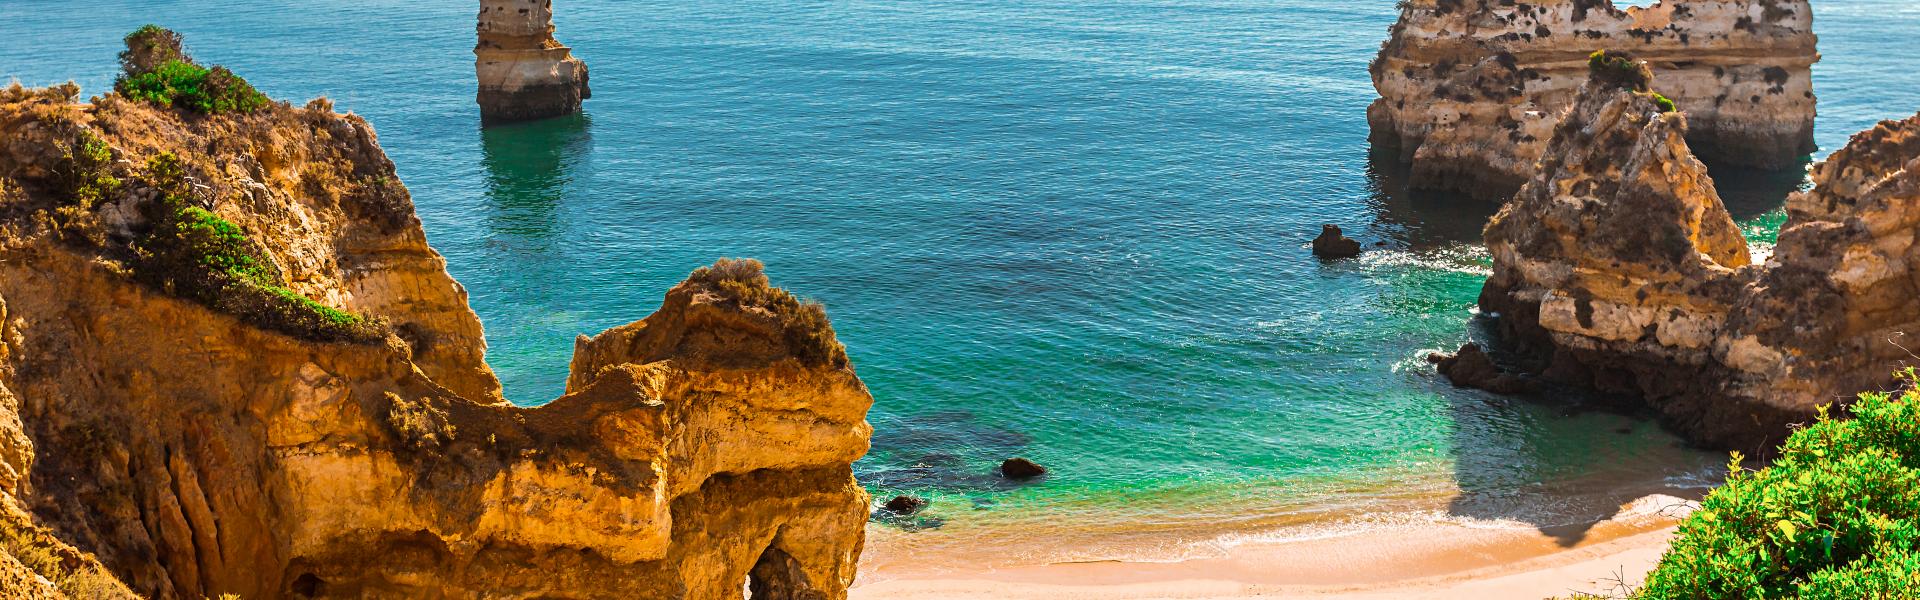 Semesterboende Portugal på någon av de många underbara öarna. - Casamundo